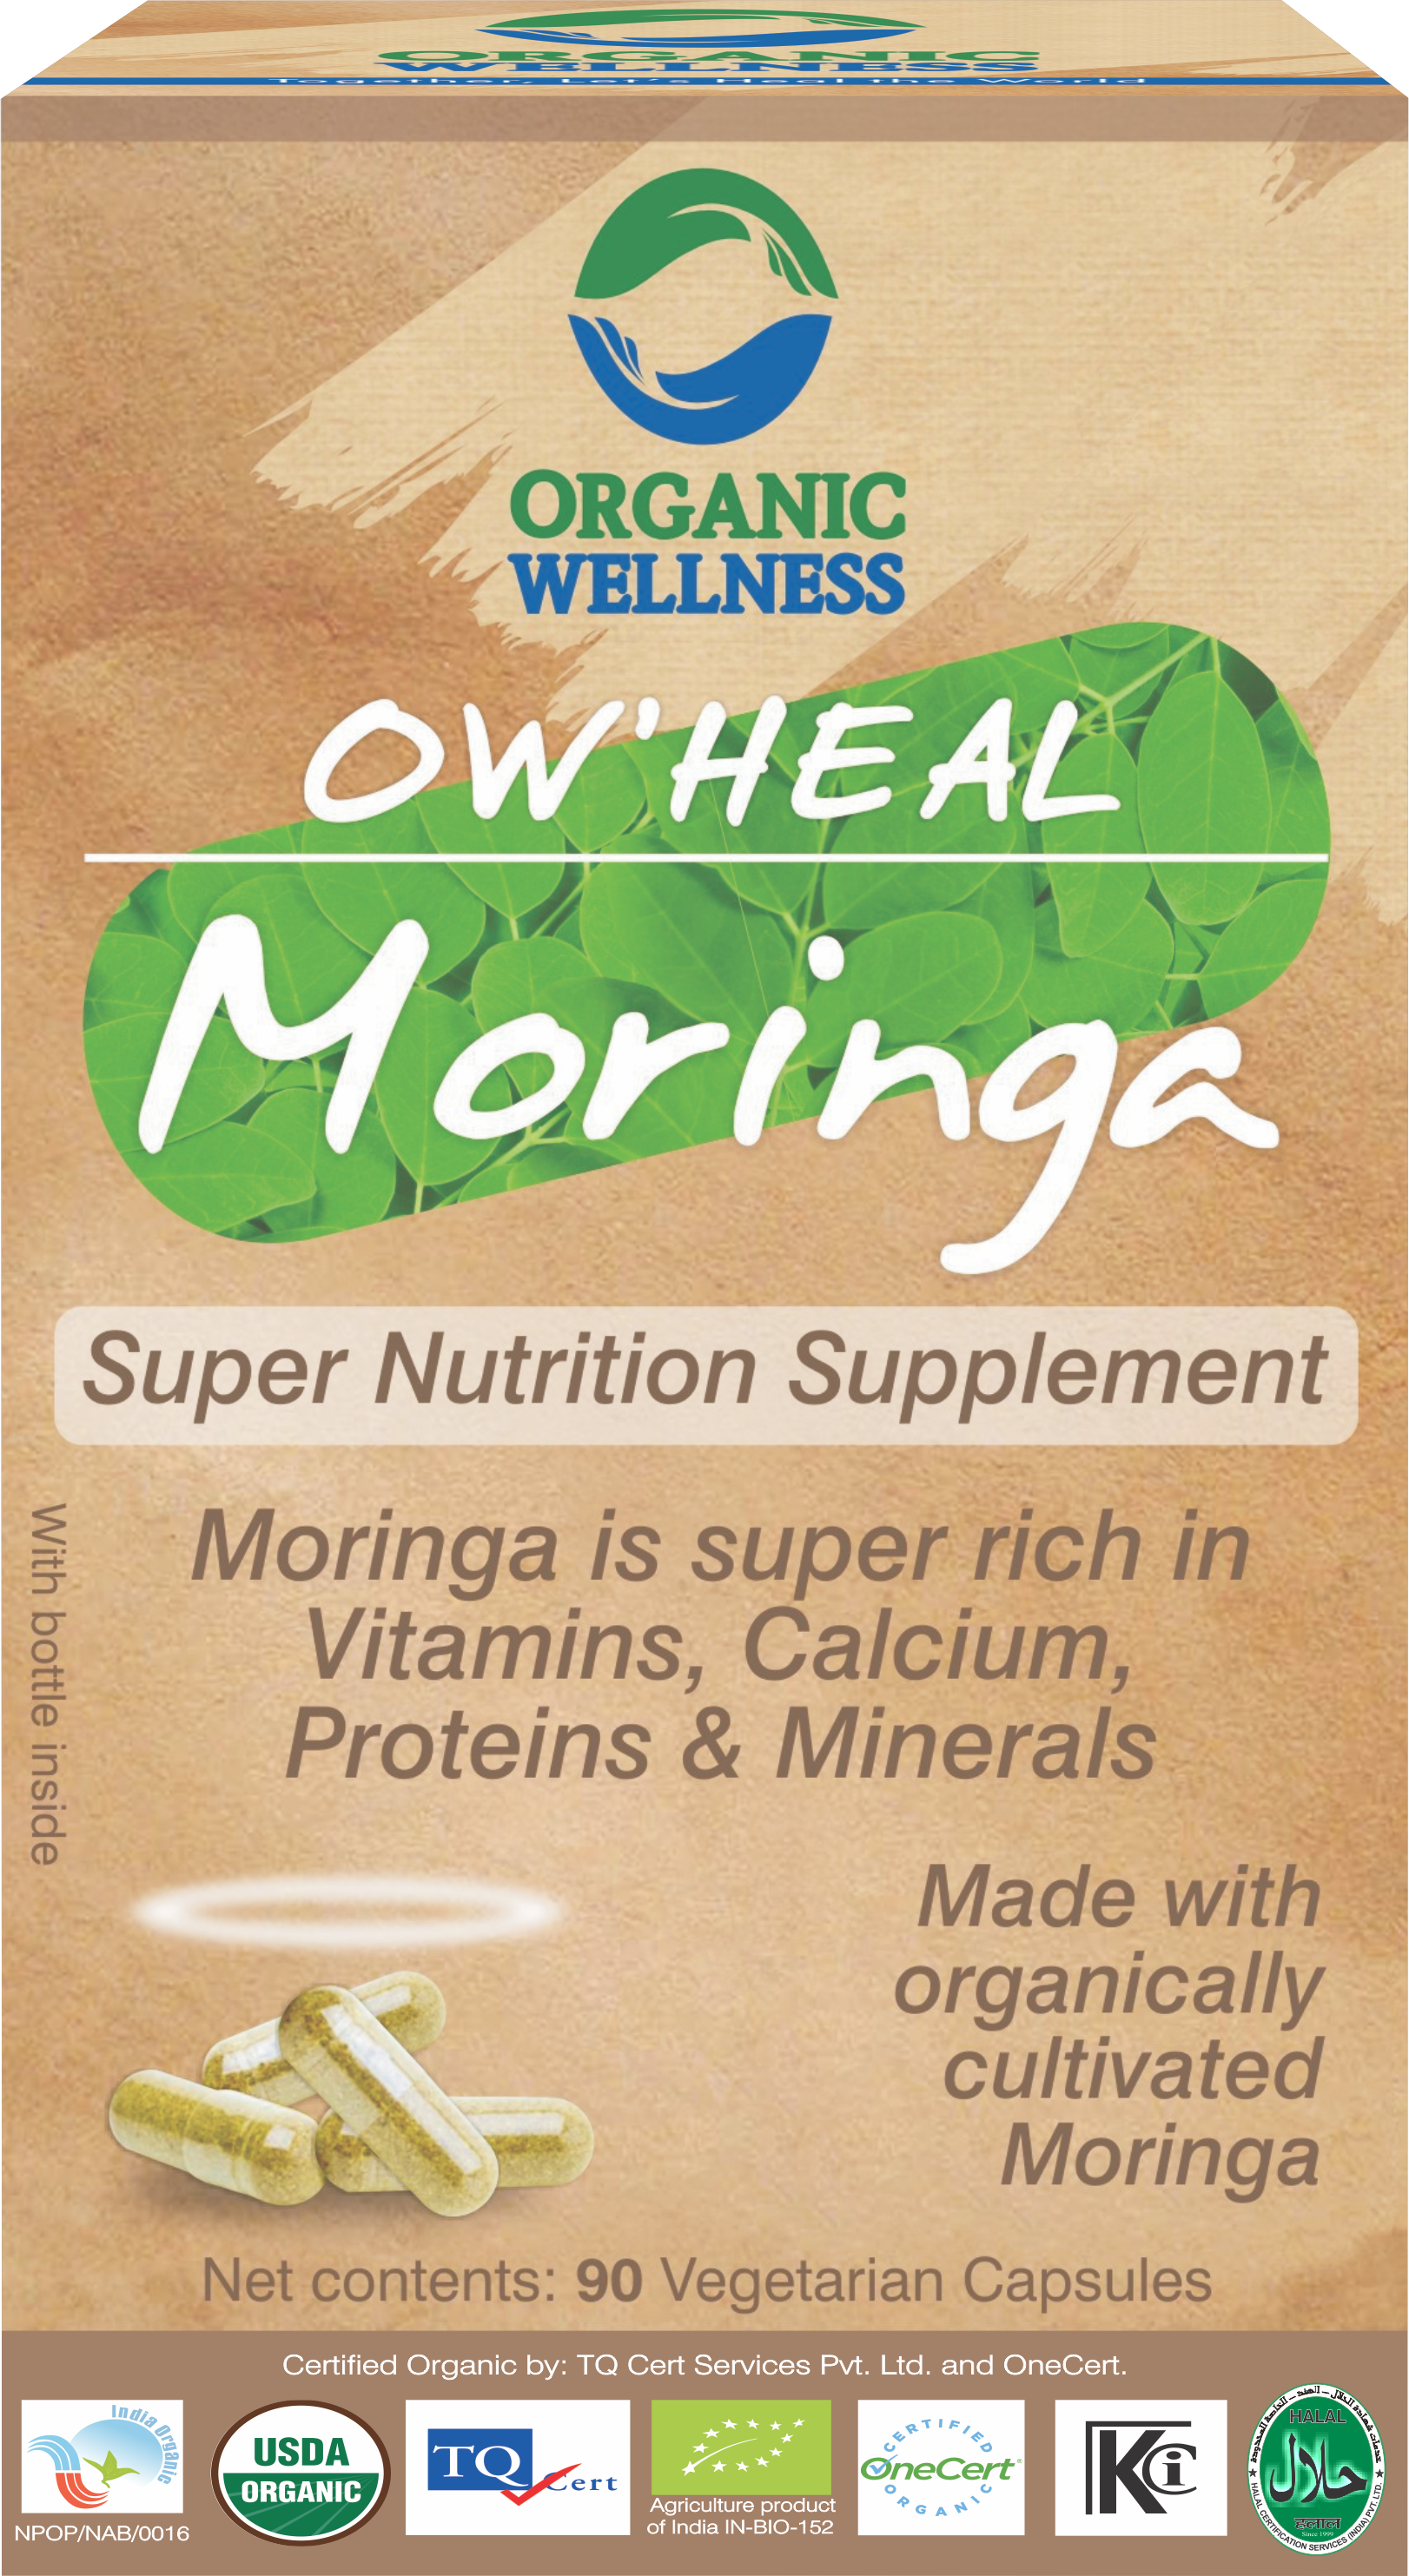 Buy Organic Wellness Heal Moringa Capsule at Best Price Online